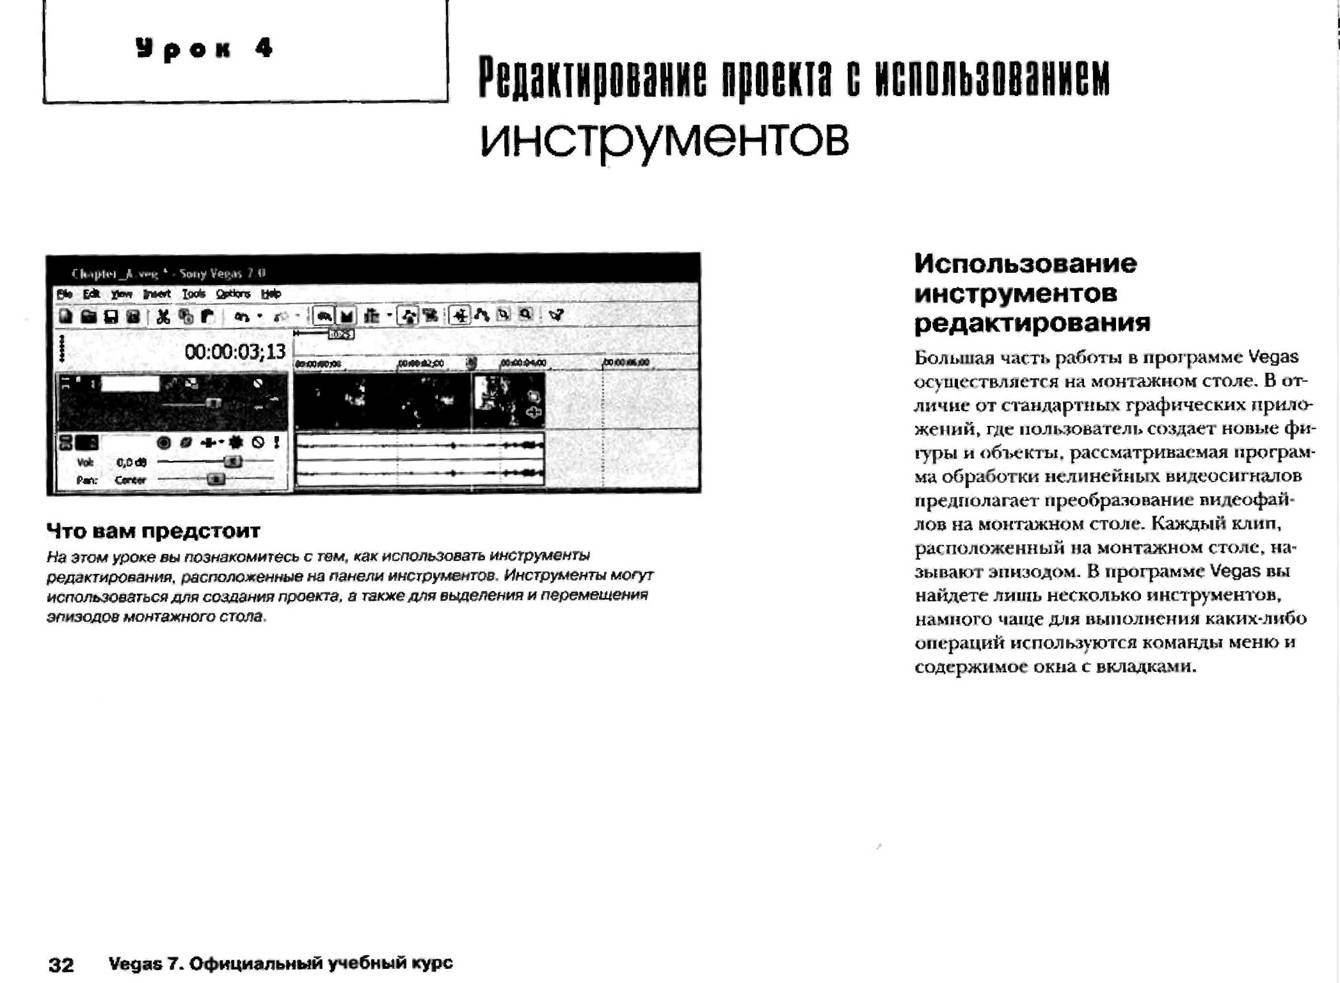 http://redaktori-uroki.3dn.ru/_ph/13/769683400.jpg